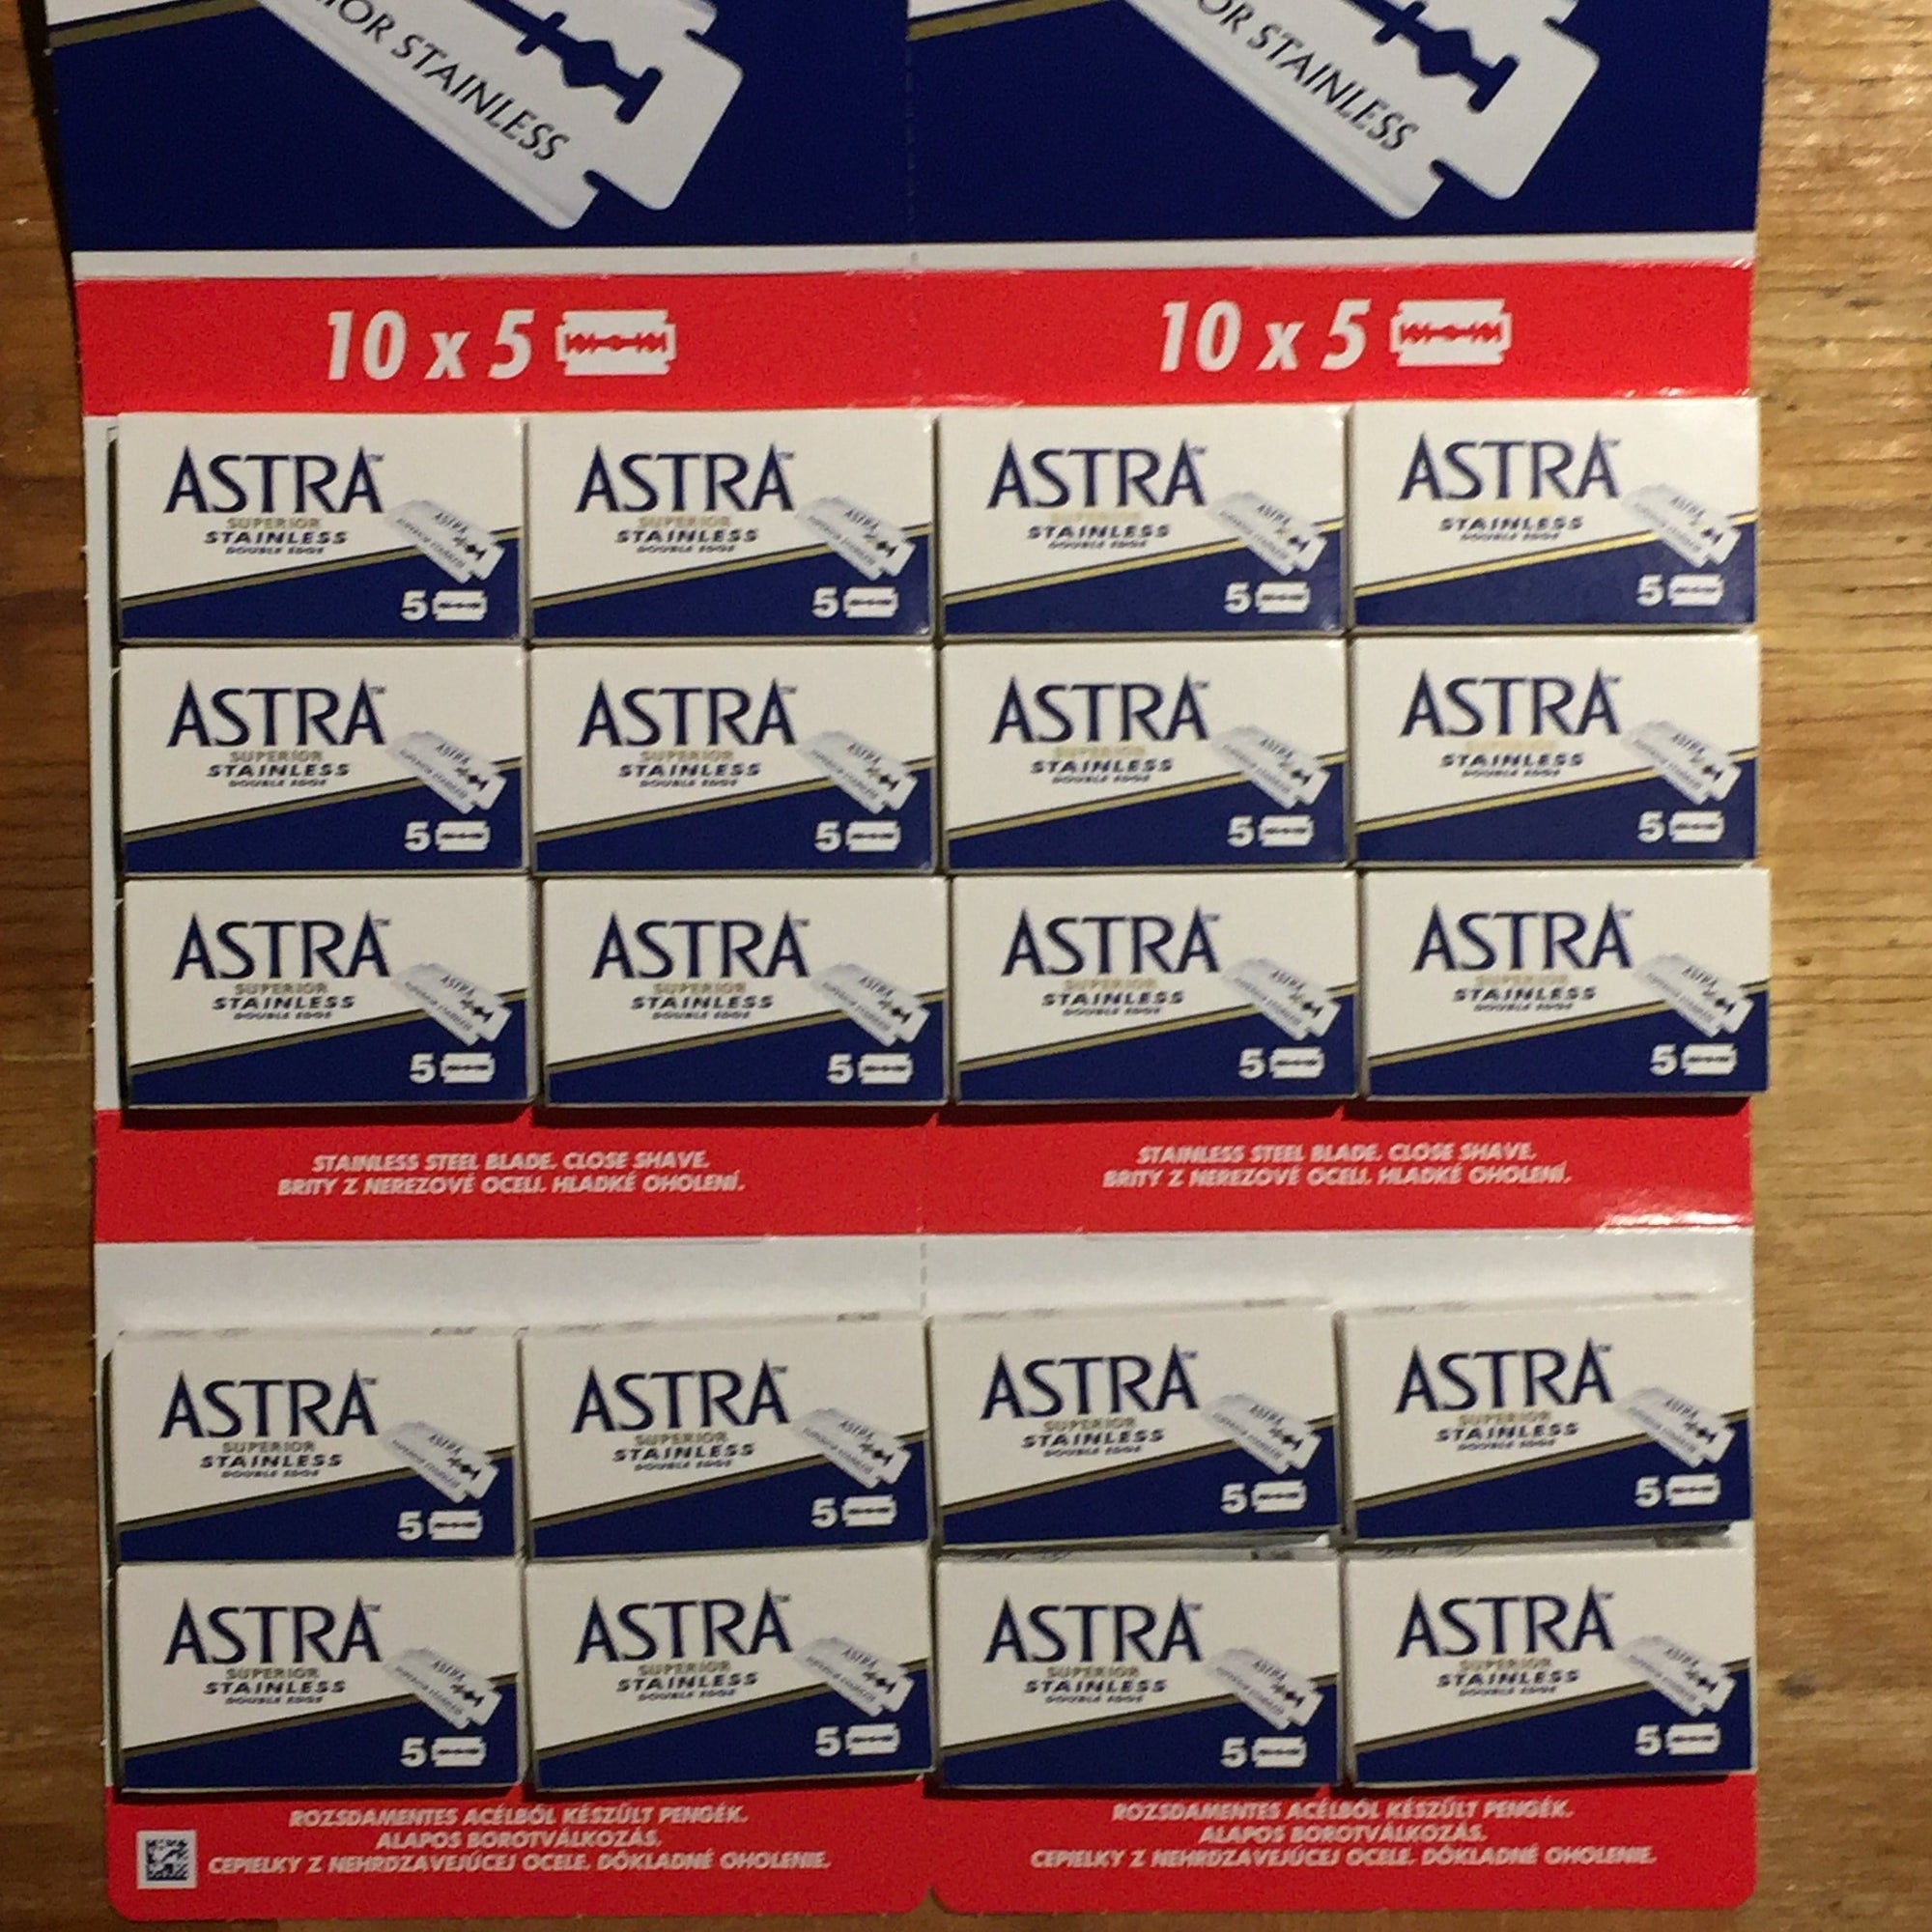 Astra Stainless Steel Razor Blades - packk